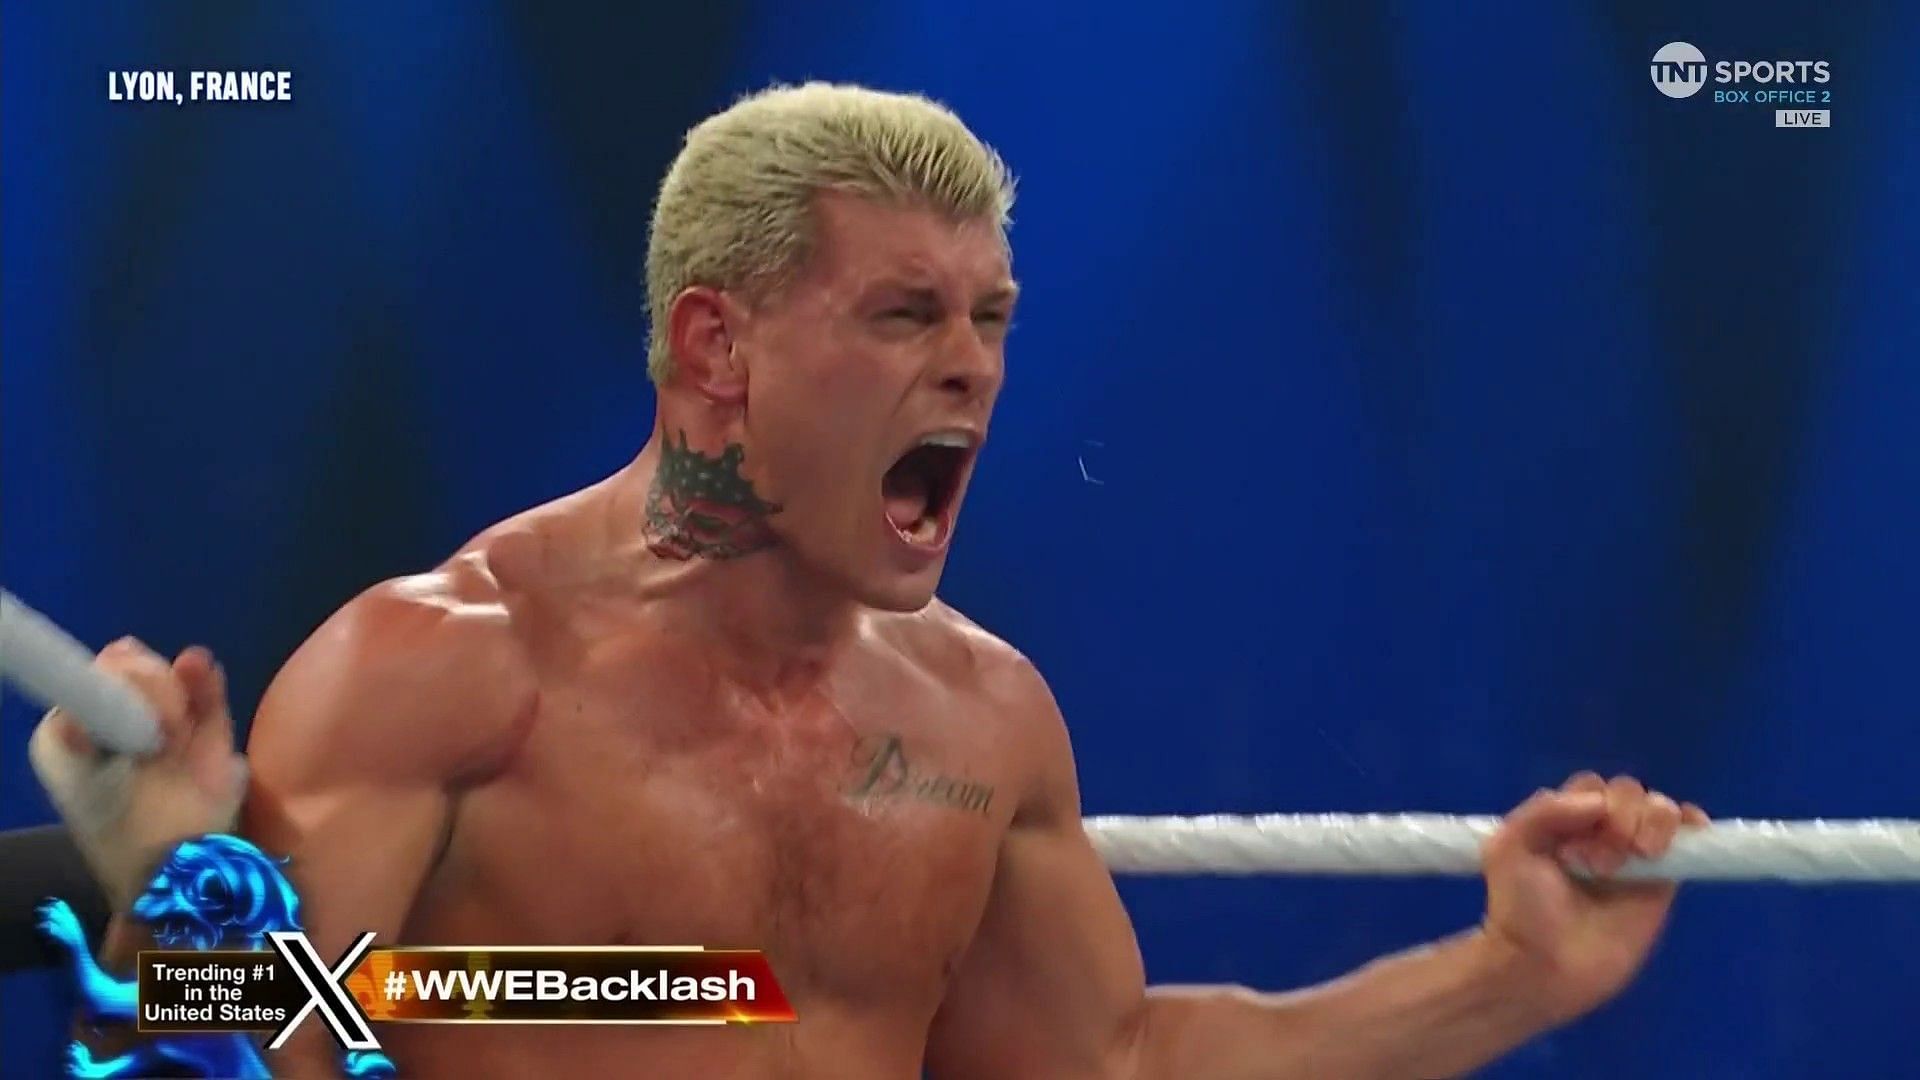 Cody Rhodes at WWE Backlash France